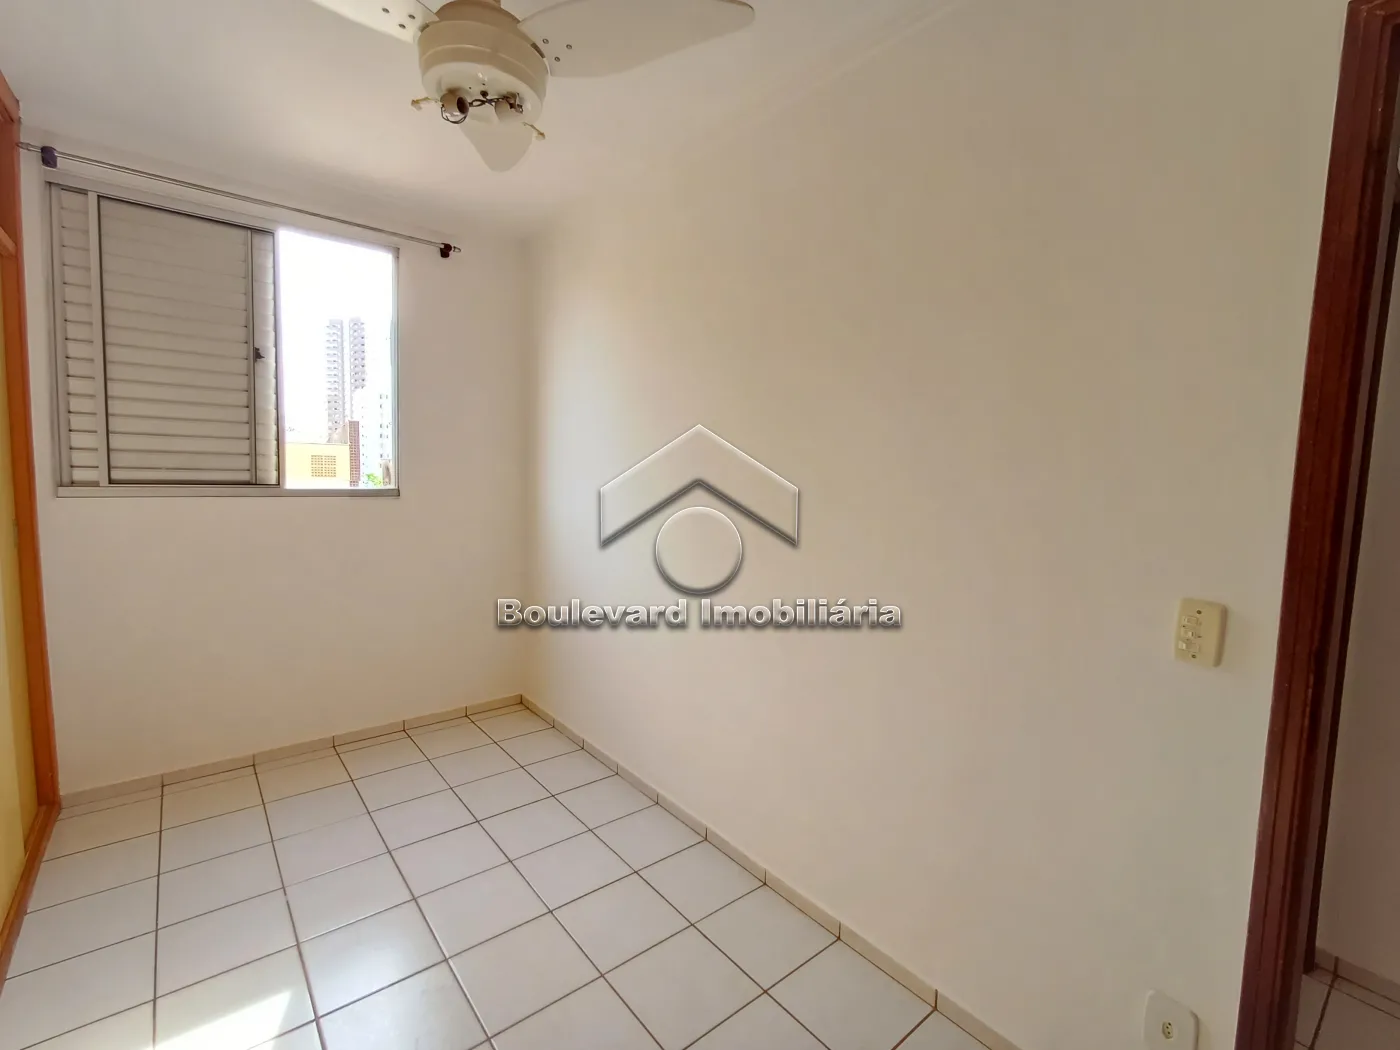 Alugar Apartamento / Padrão em Ribeirão Preto R$ 1.050,00 - Foto 13